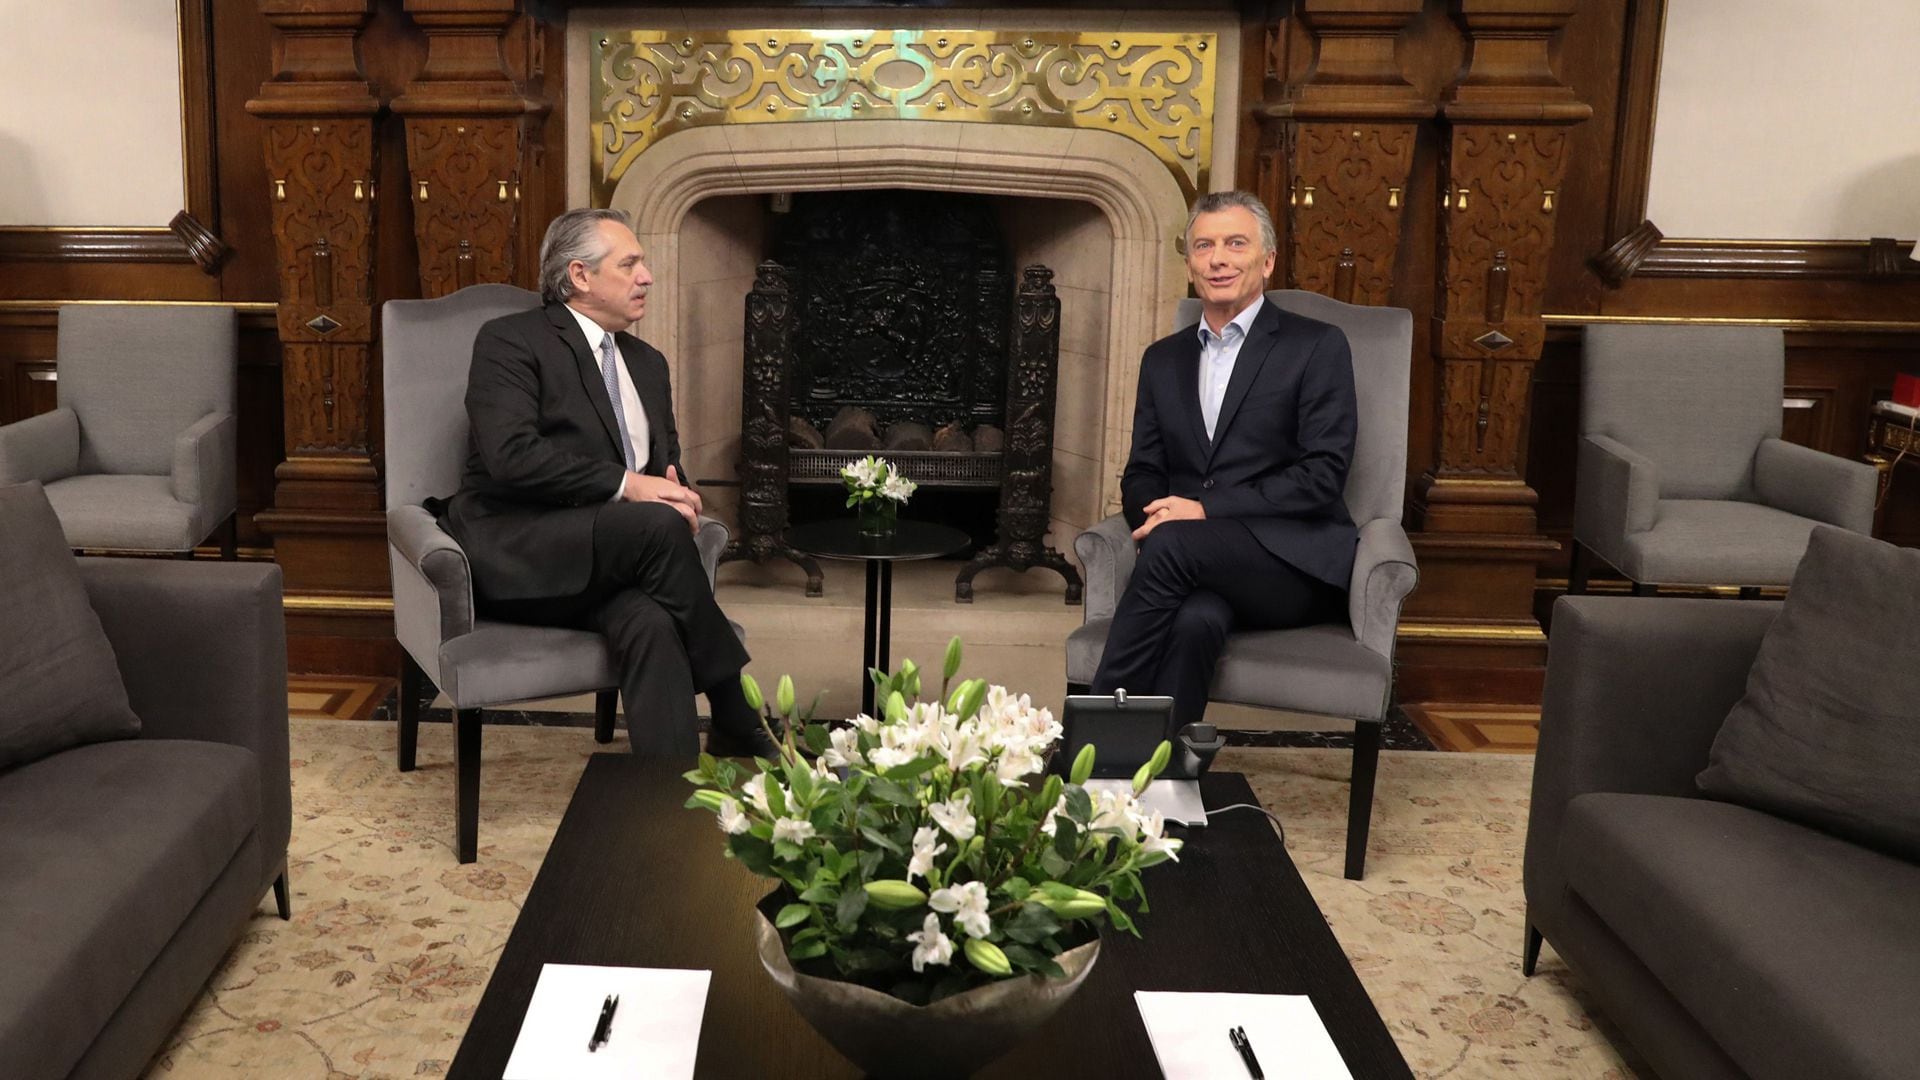 Después de varios idas y vueltas, Mauricio Macri y Alberto Fernández se reunieron en Casa Rosada para hablar sobre la transición. No comparten nada en lo político, pero lograron un vínculo personal más que razonable.